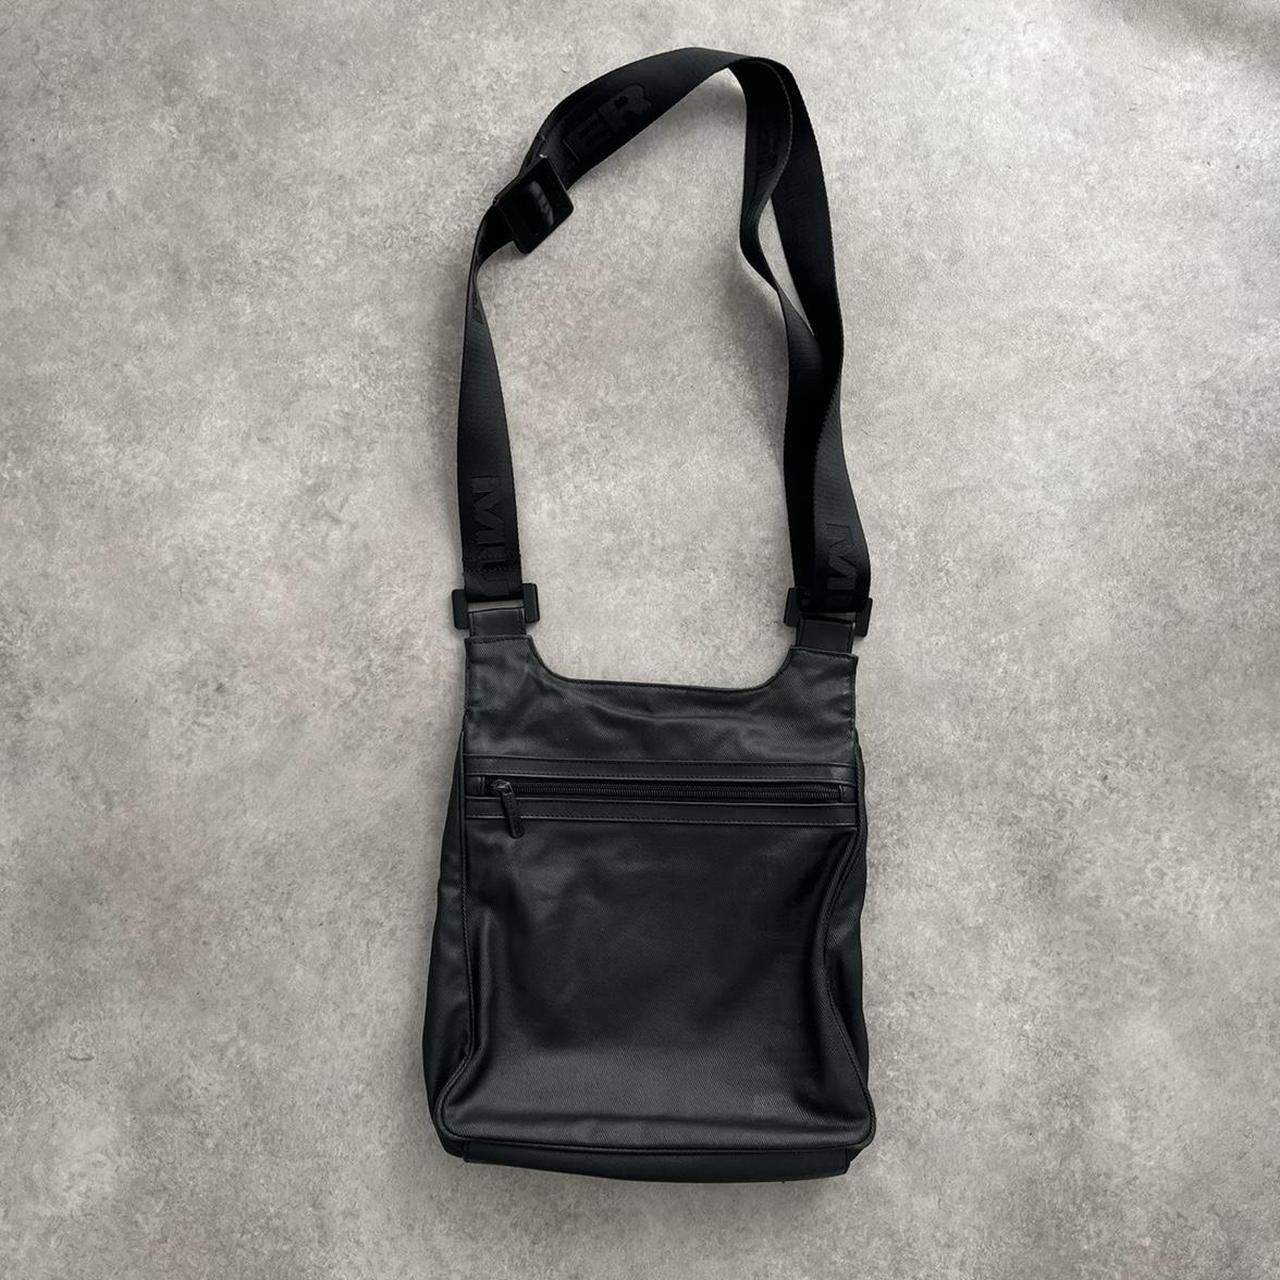 Black Mugler side bag Goes with everything Ideal... - Depop